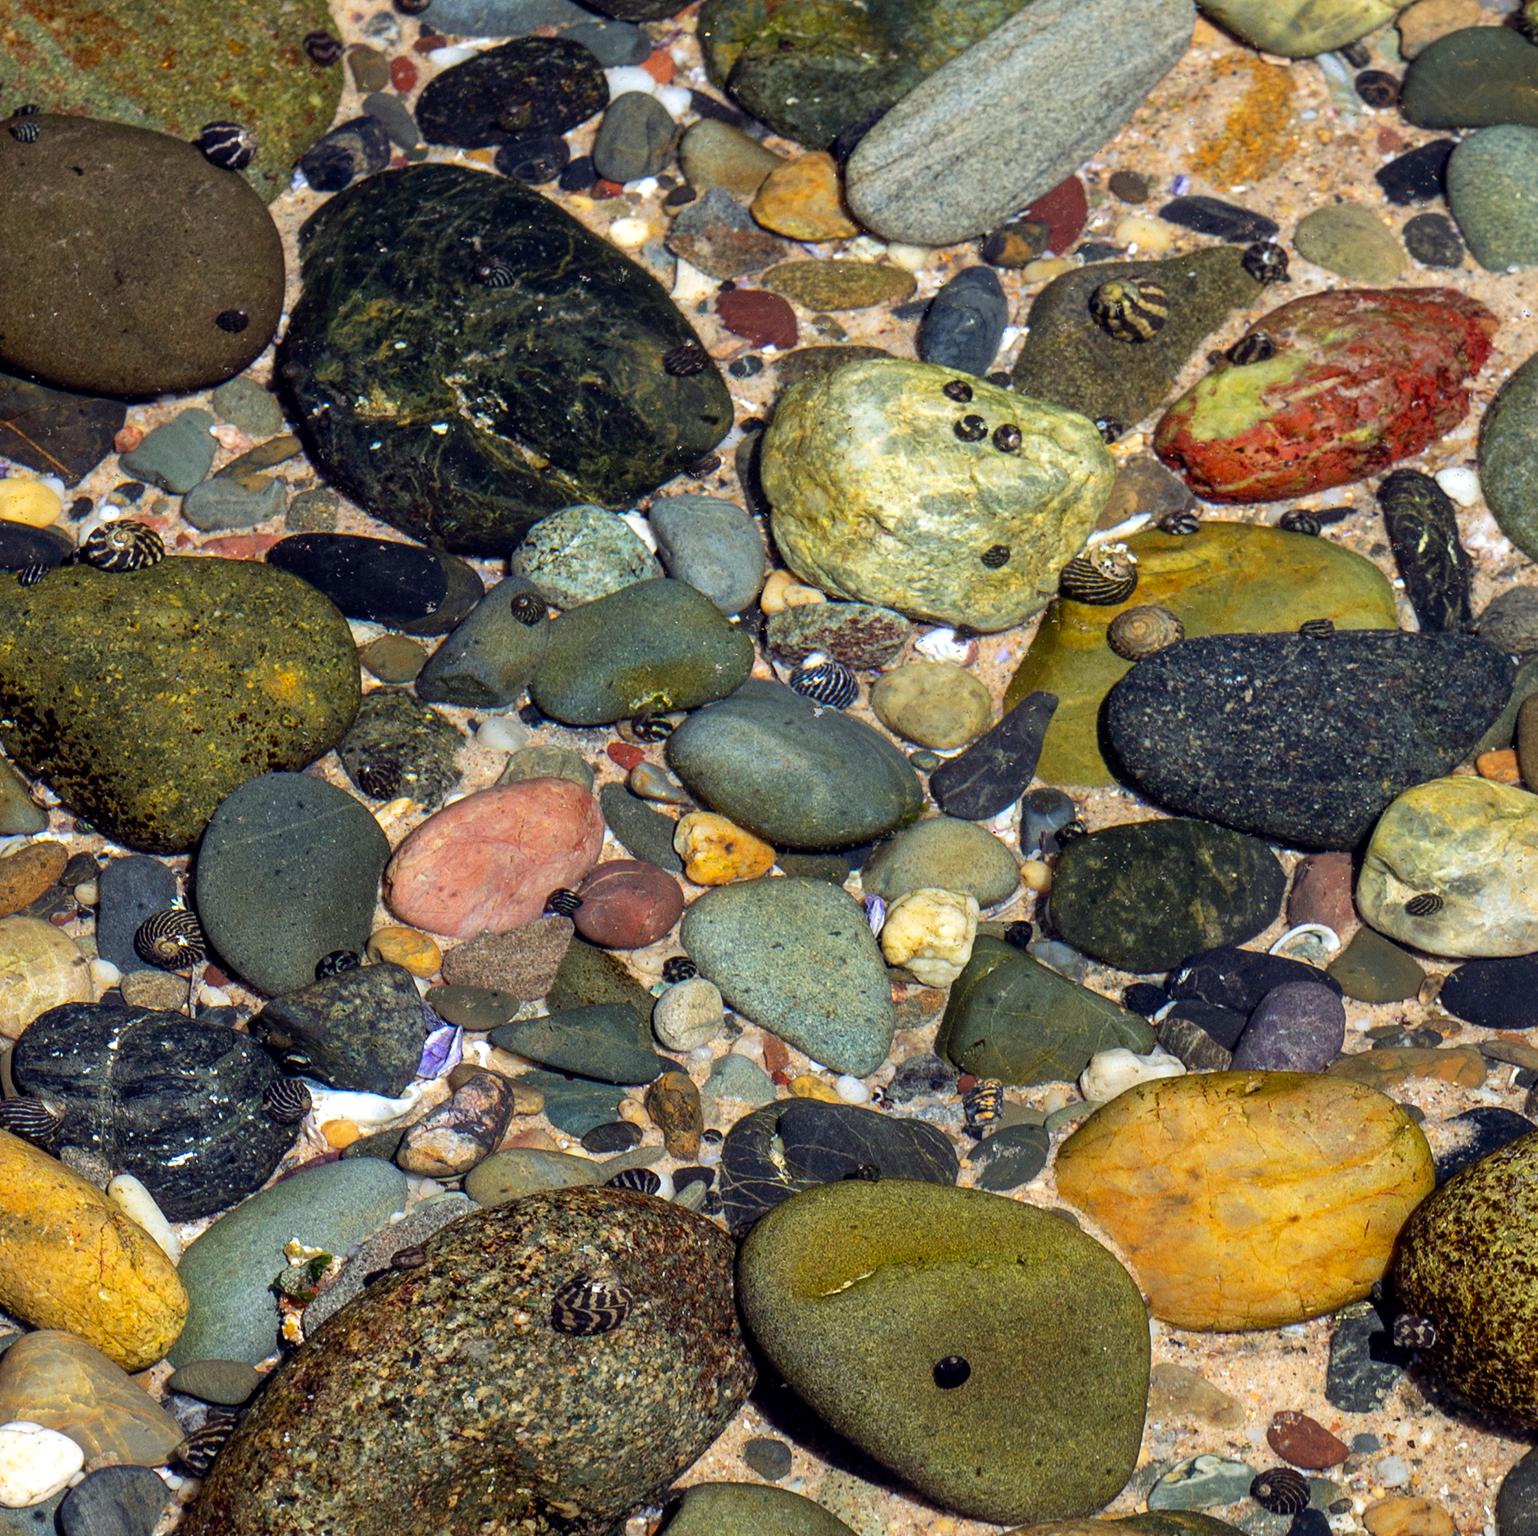 Bassin de marée de pierres multicolores. Yamba, Australie, 2019.
Photographie de Cosmo Condina de pierres colorées dans un bassin de marée. Yamba, Australie
Impression à pigment d'archives, 19